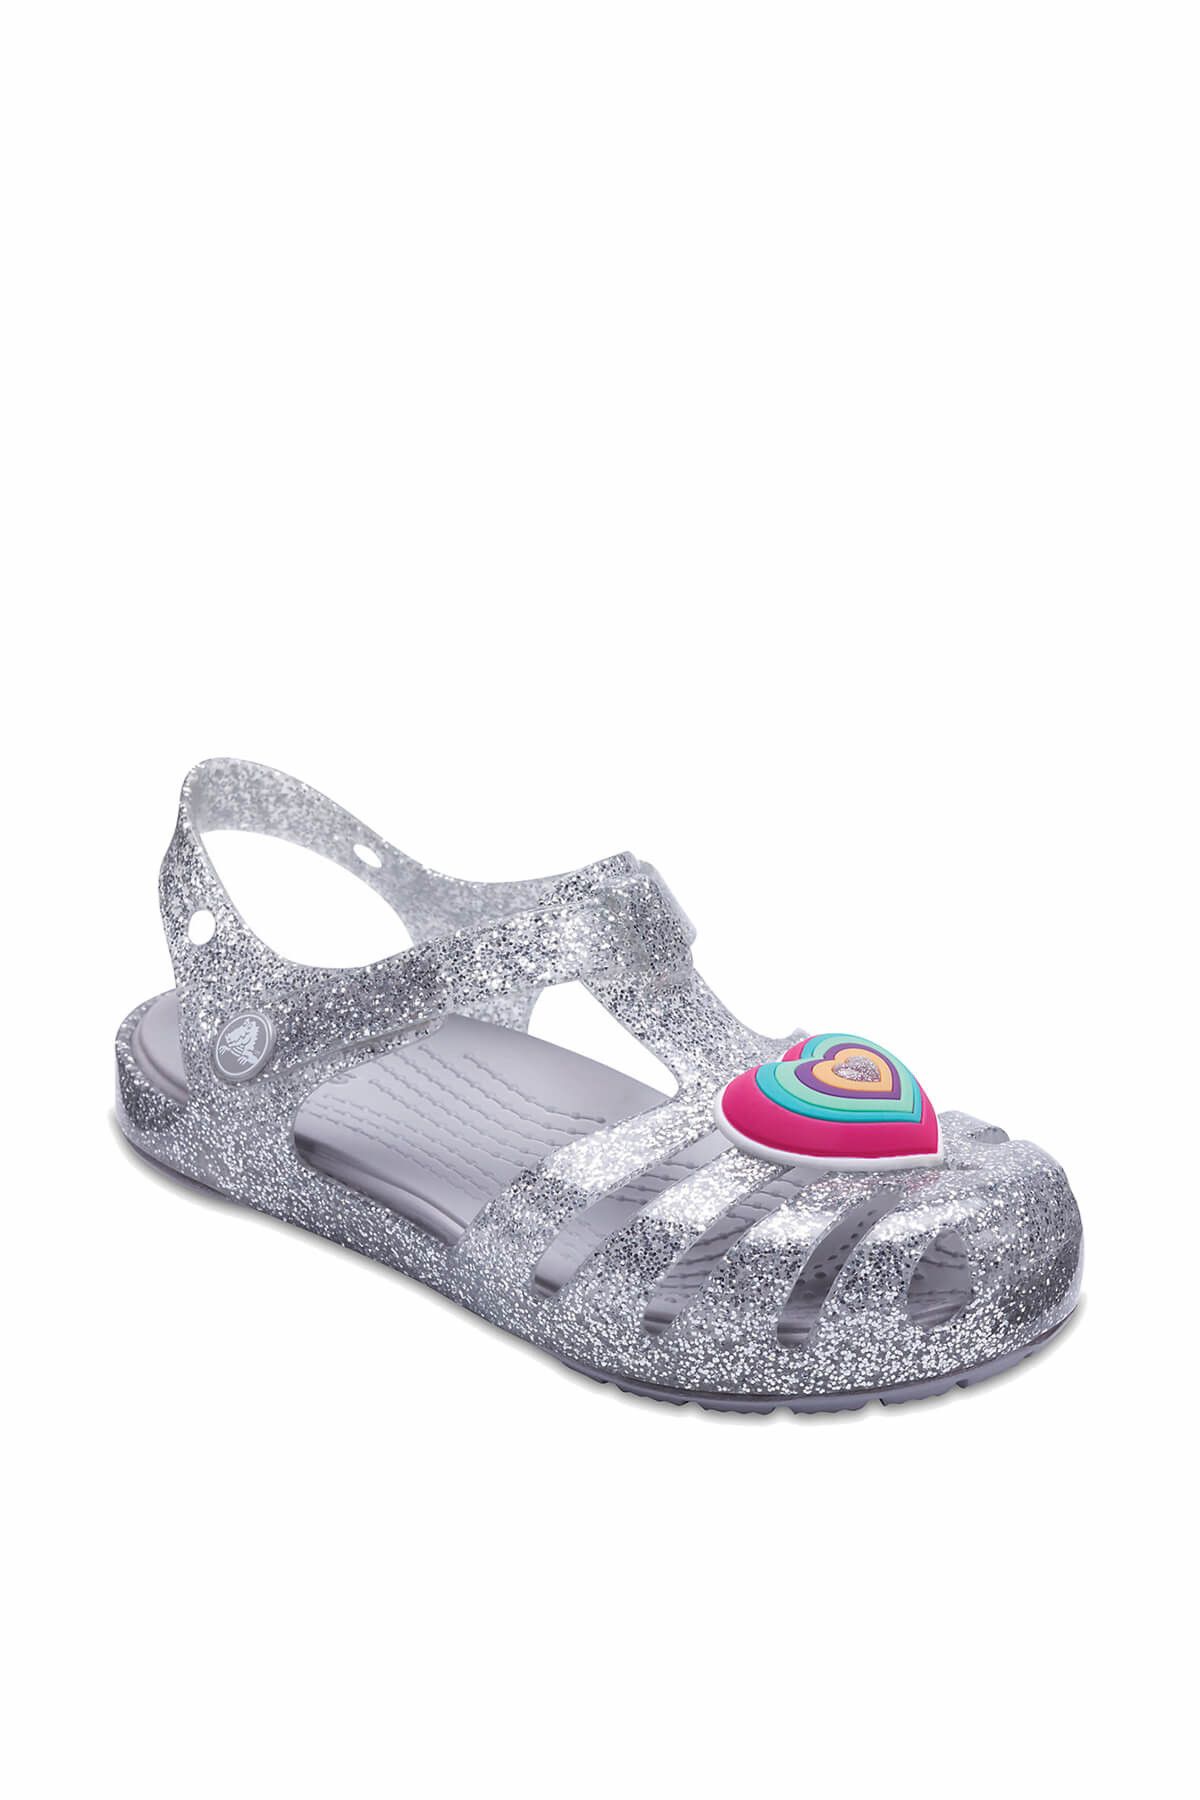 Crocs ISABELLA NOVELTY SANDAL K Gümüş Kız Çocuk Sandalet 100528685